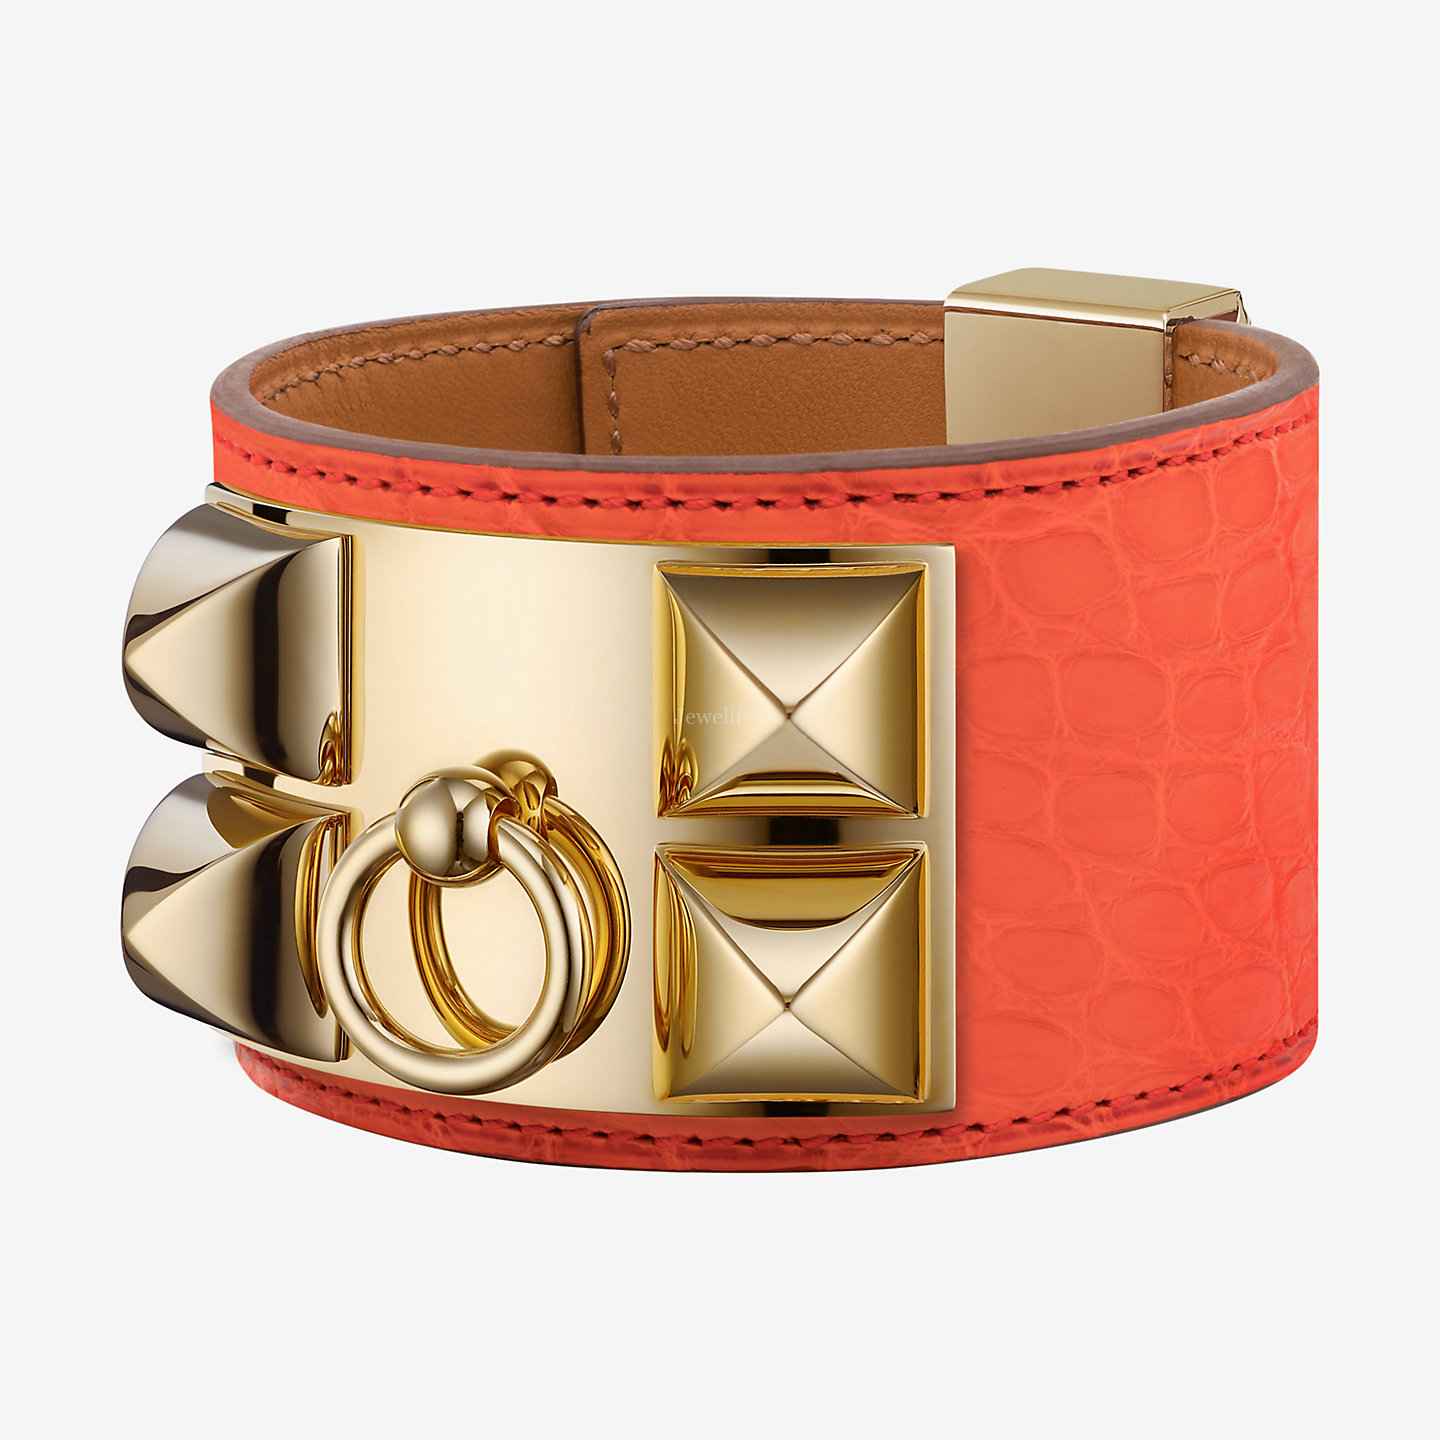 Hermes bracelet in Swift calfskin